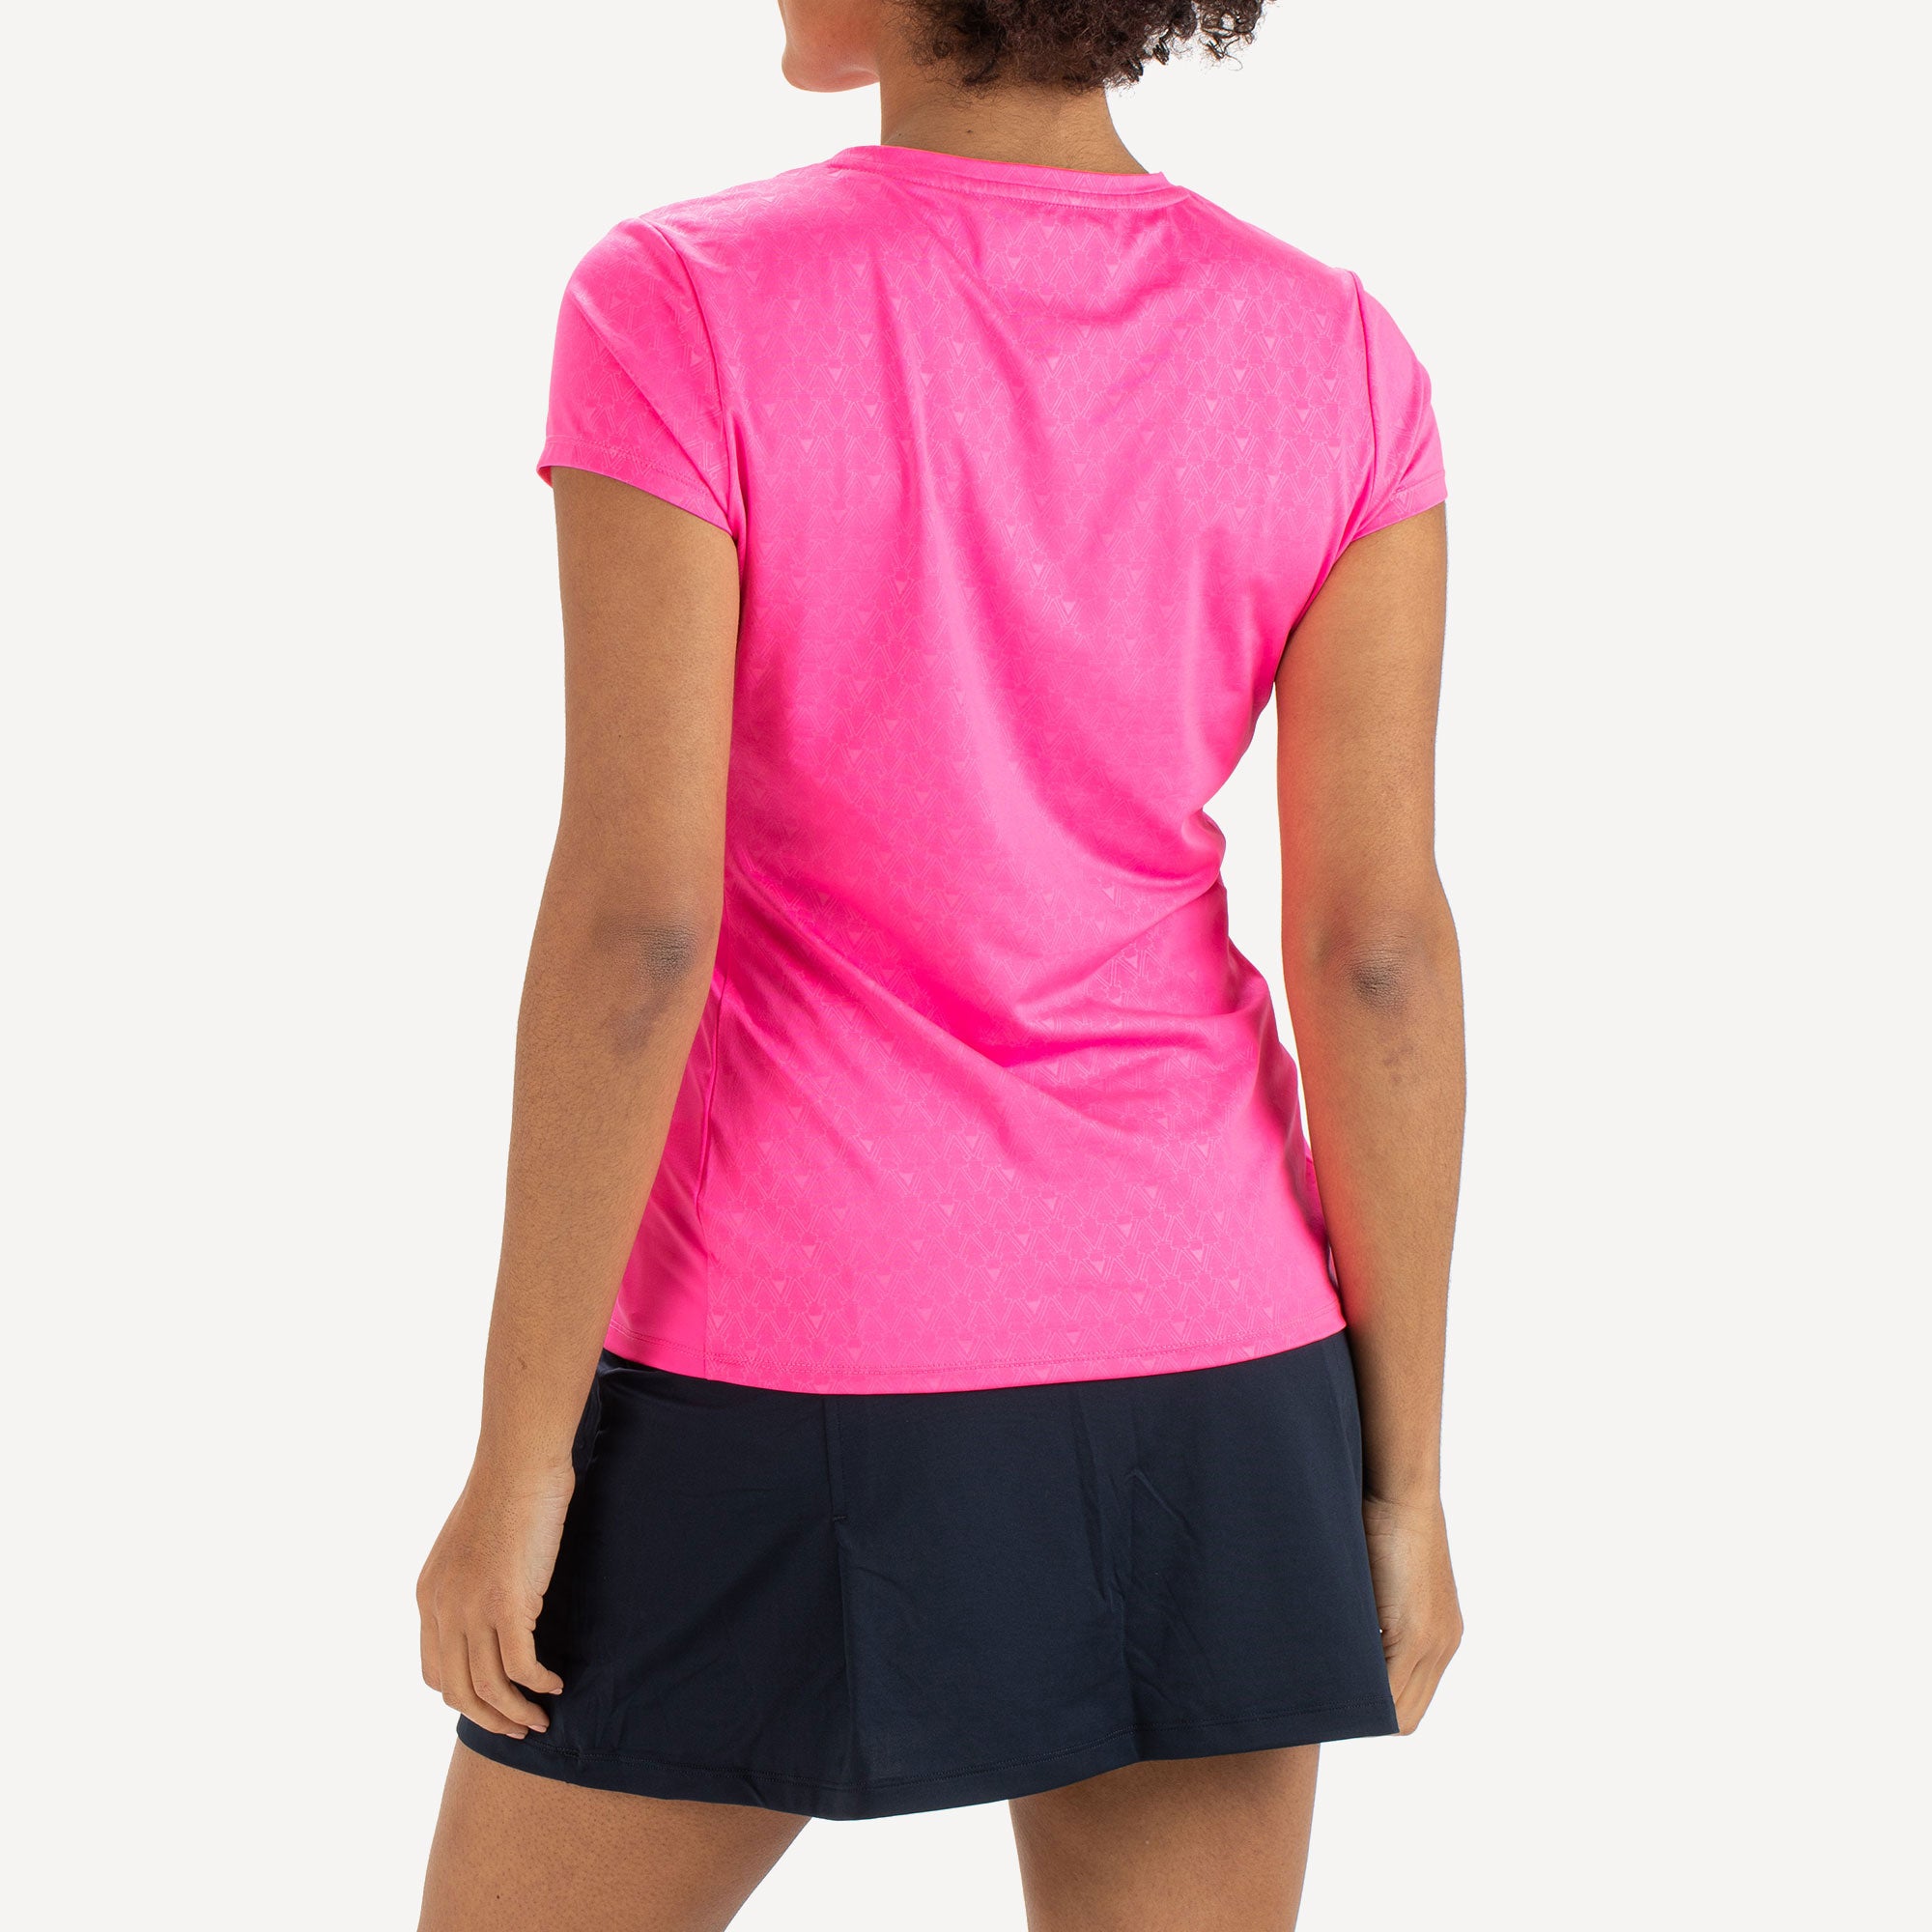 Sjeng Sports Dianne Women's Tennis Shirt Pink (2)